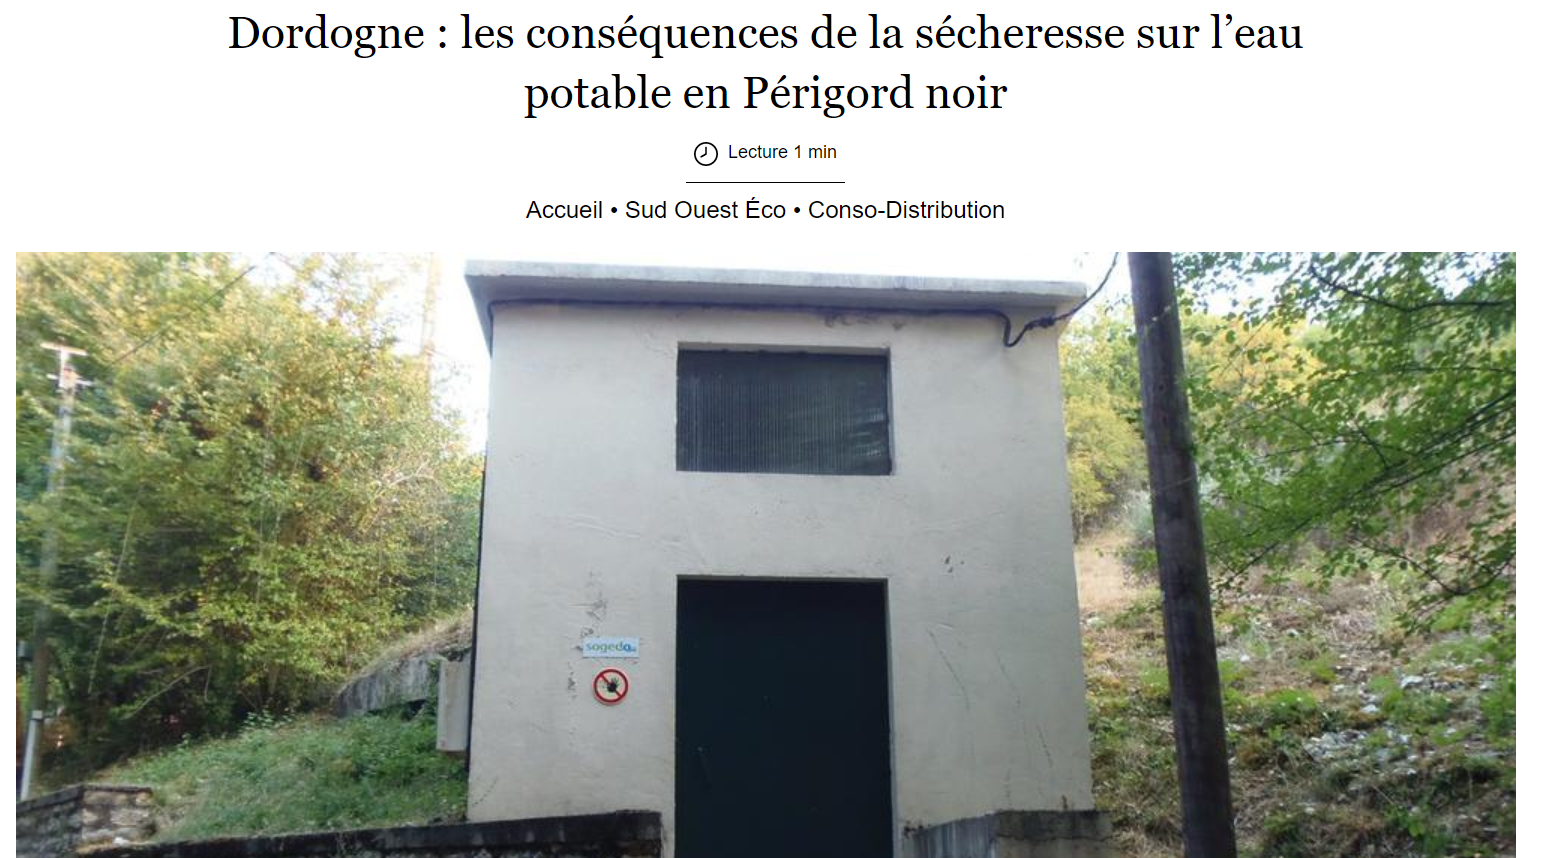 Dordogne : Sogedo et la sécheresse dans le Périgord noir